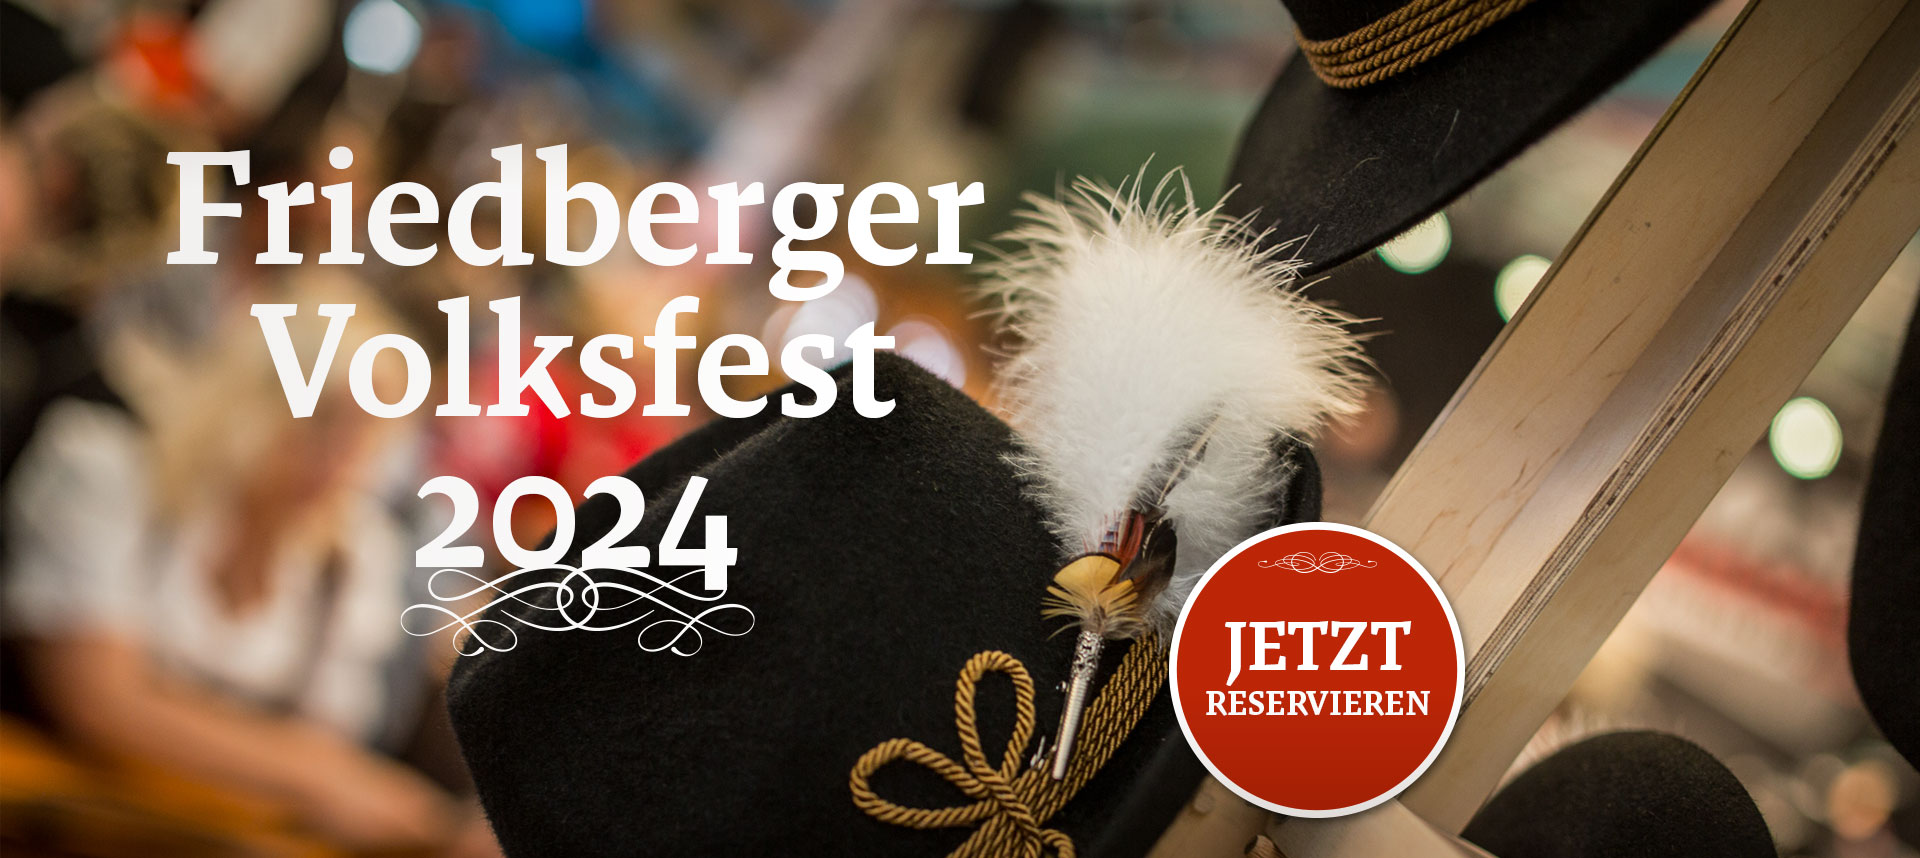 Kommt zum Friedberger Volksfest 2024